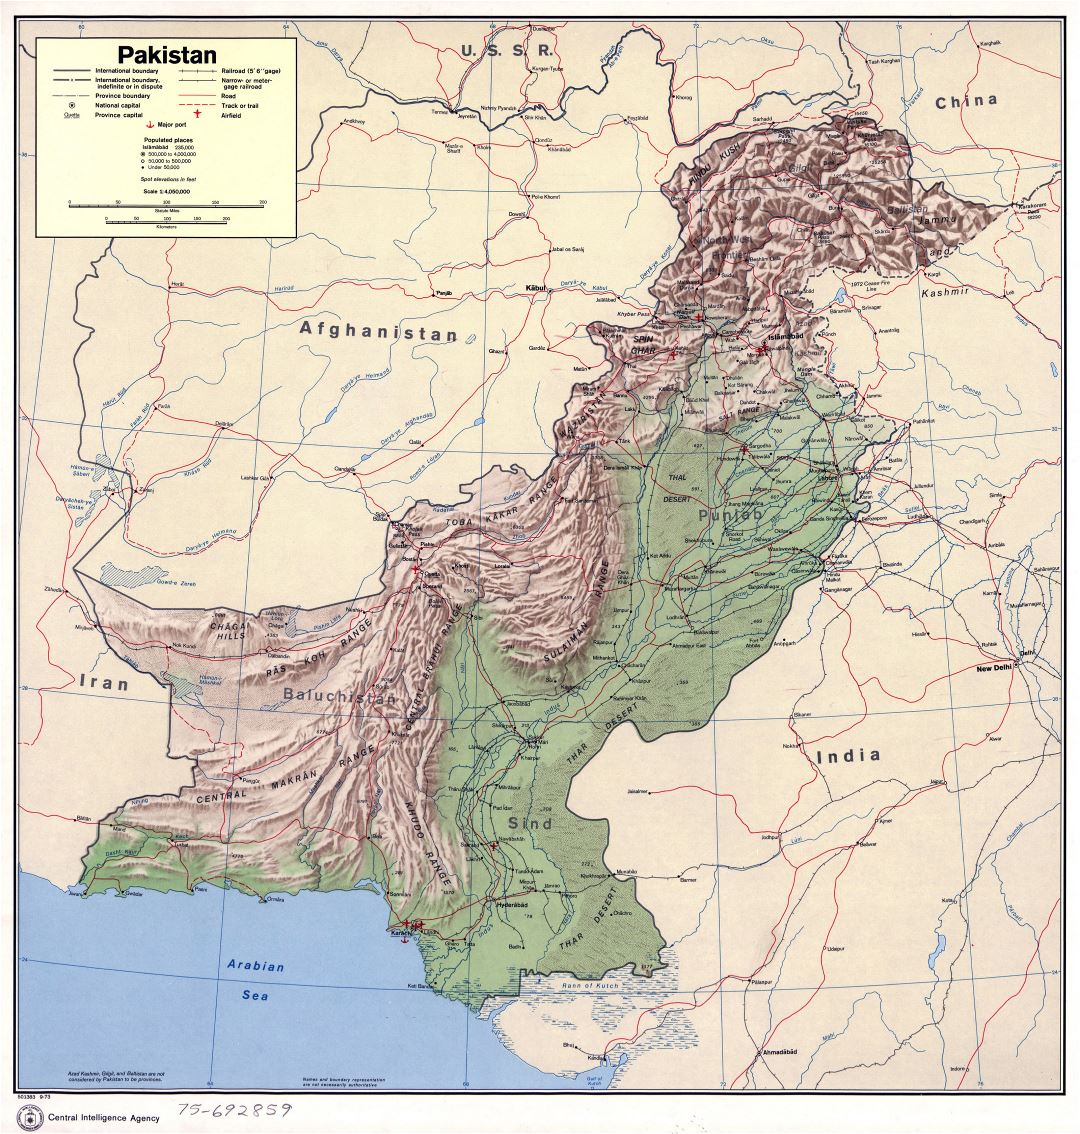 Grande detallado mapa político y administrativo de Pakistán con relieve, carreteras, ferrocarriles, ciudades, puertos y aeropuertos - 1973